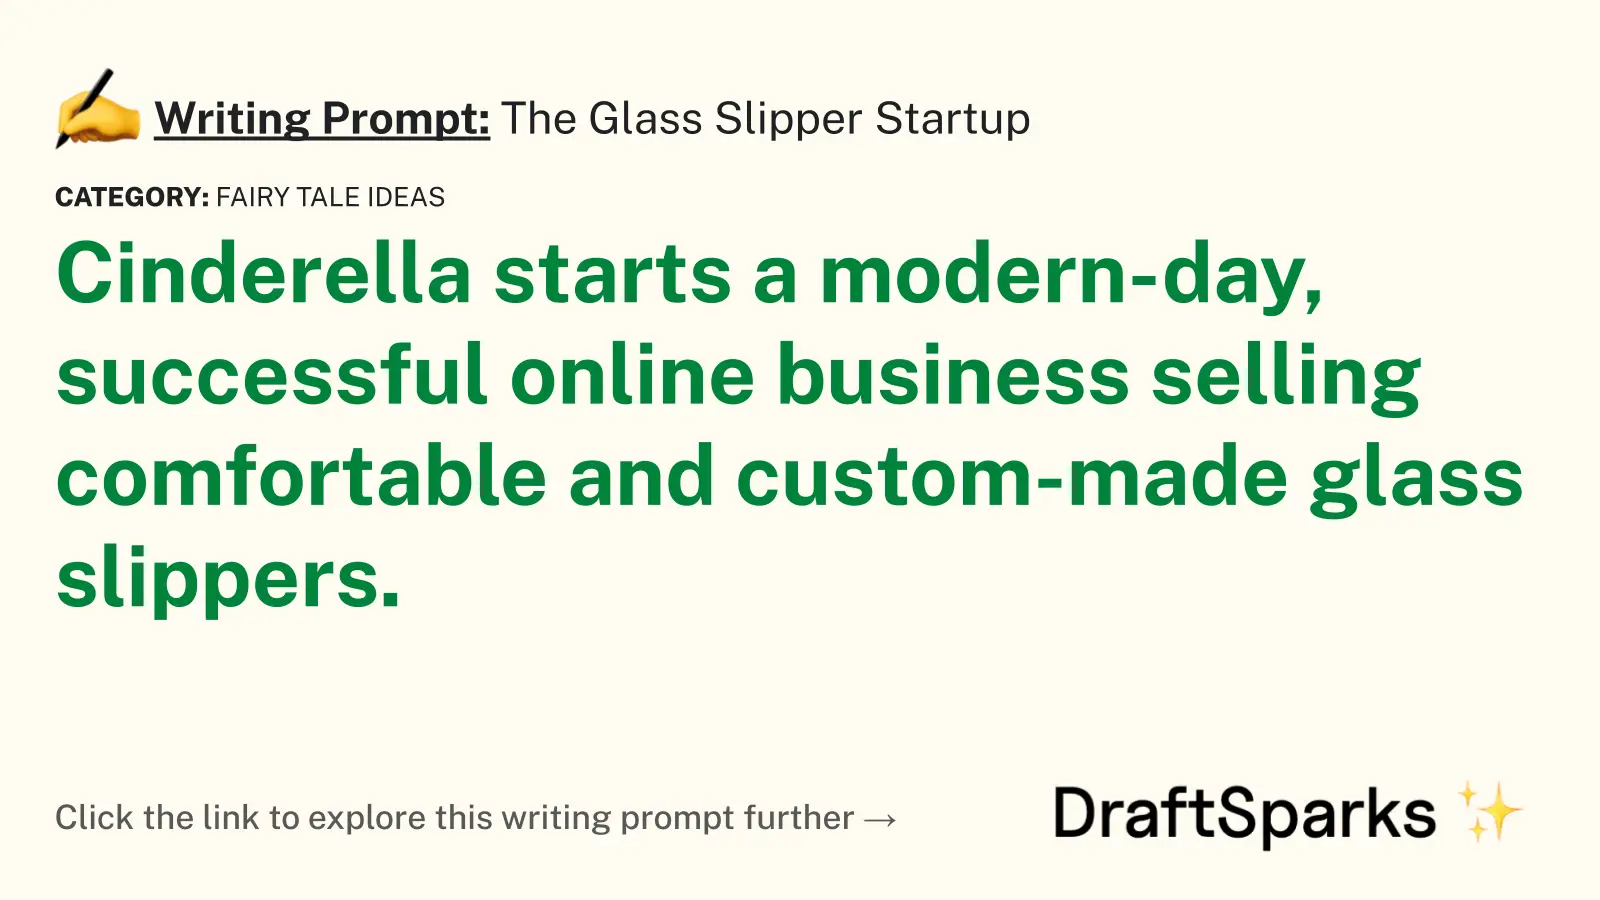 The Glass Slipper Startup